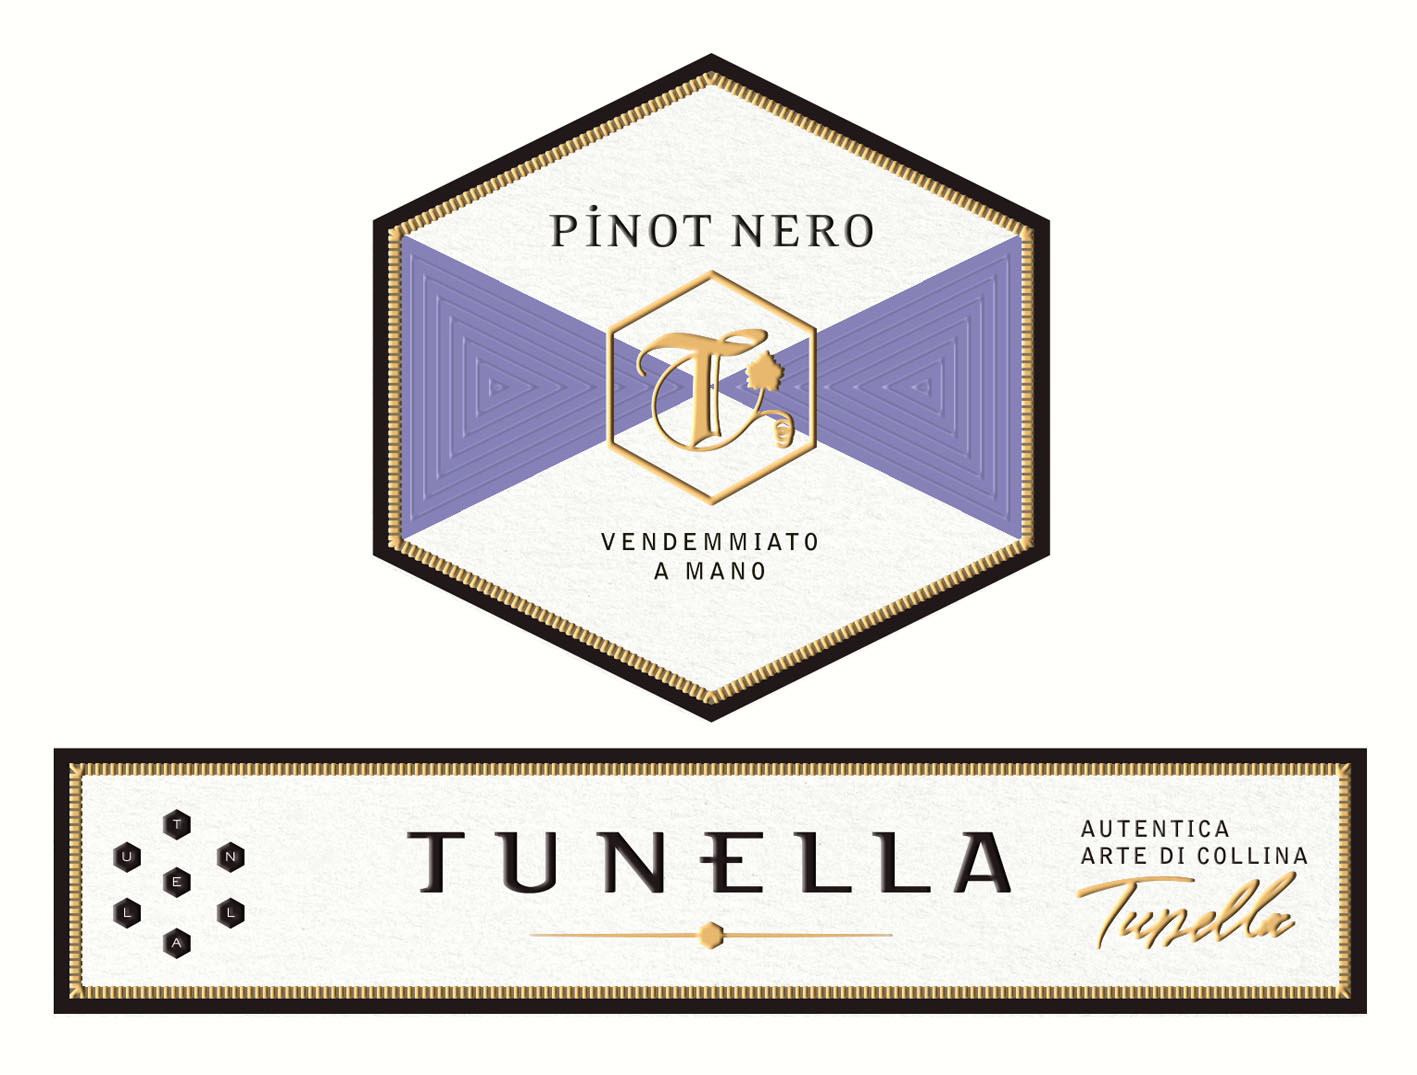 Tunella - Pinot Nero label